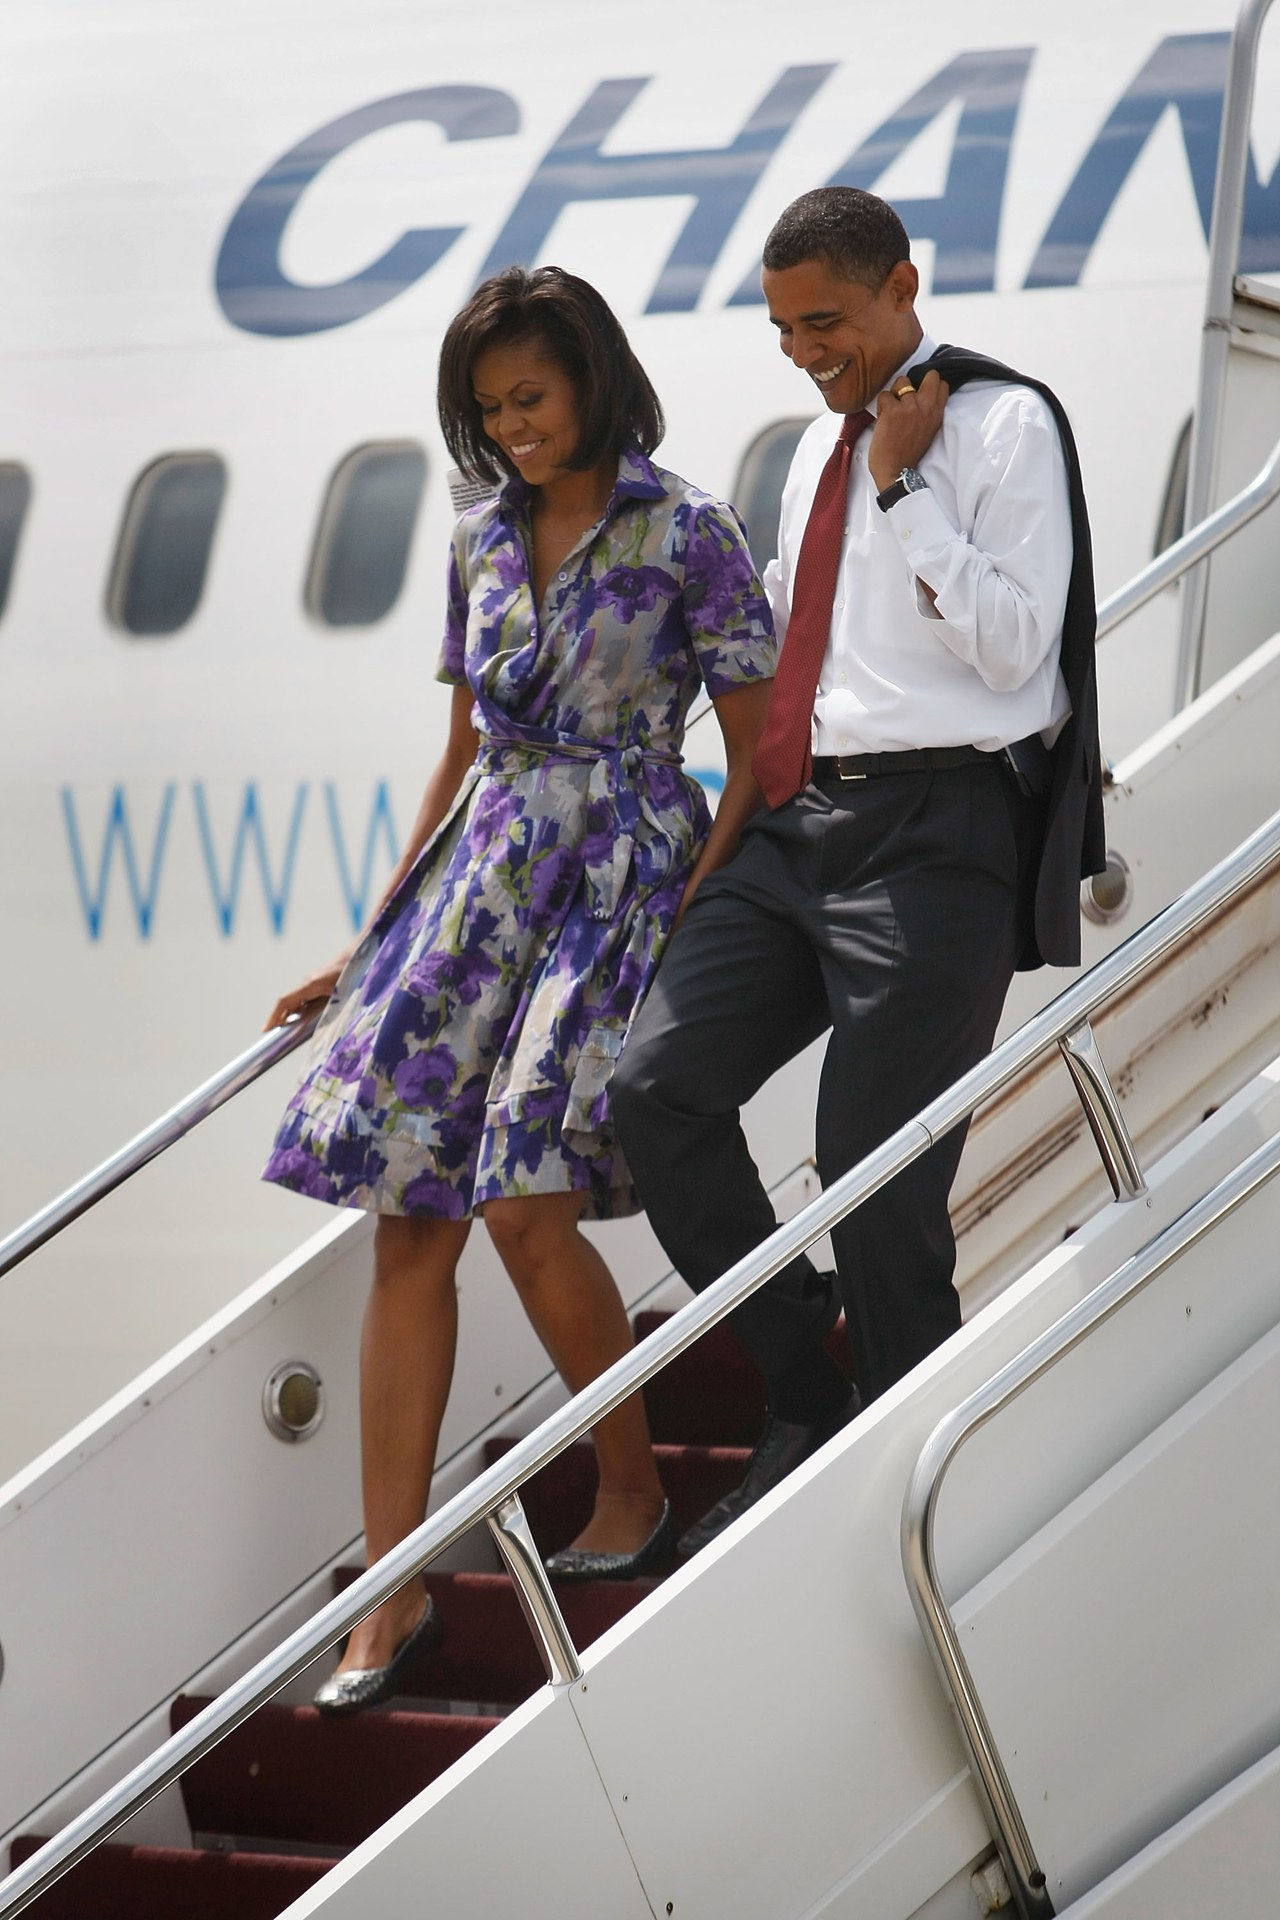 总统 candidate Barack Obama and his wife Michelle walk off the campaign plane August 23, 2008 in Springfield, Illinois.